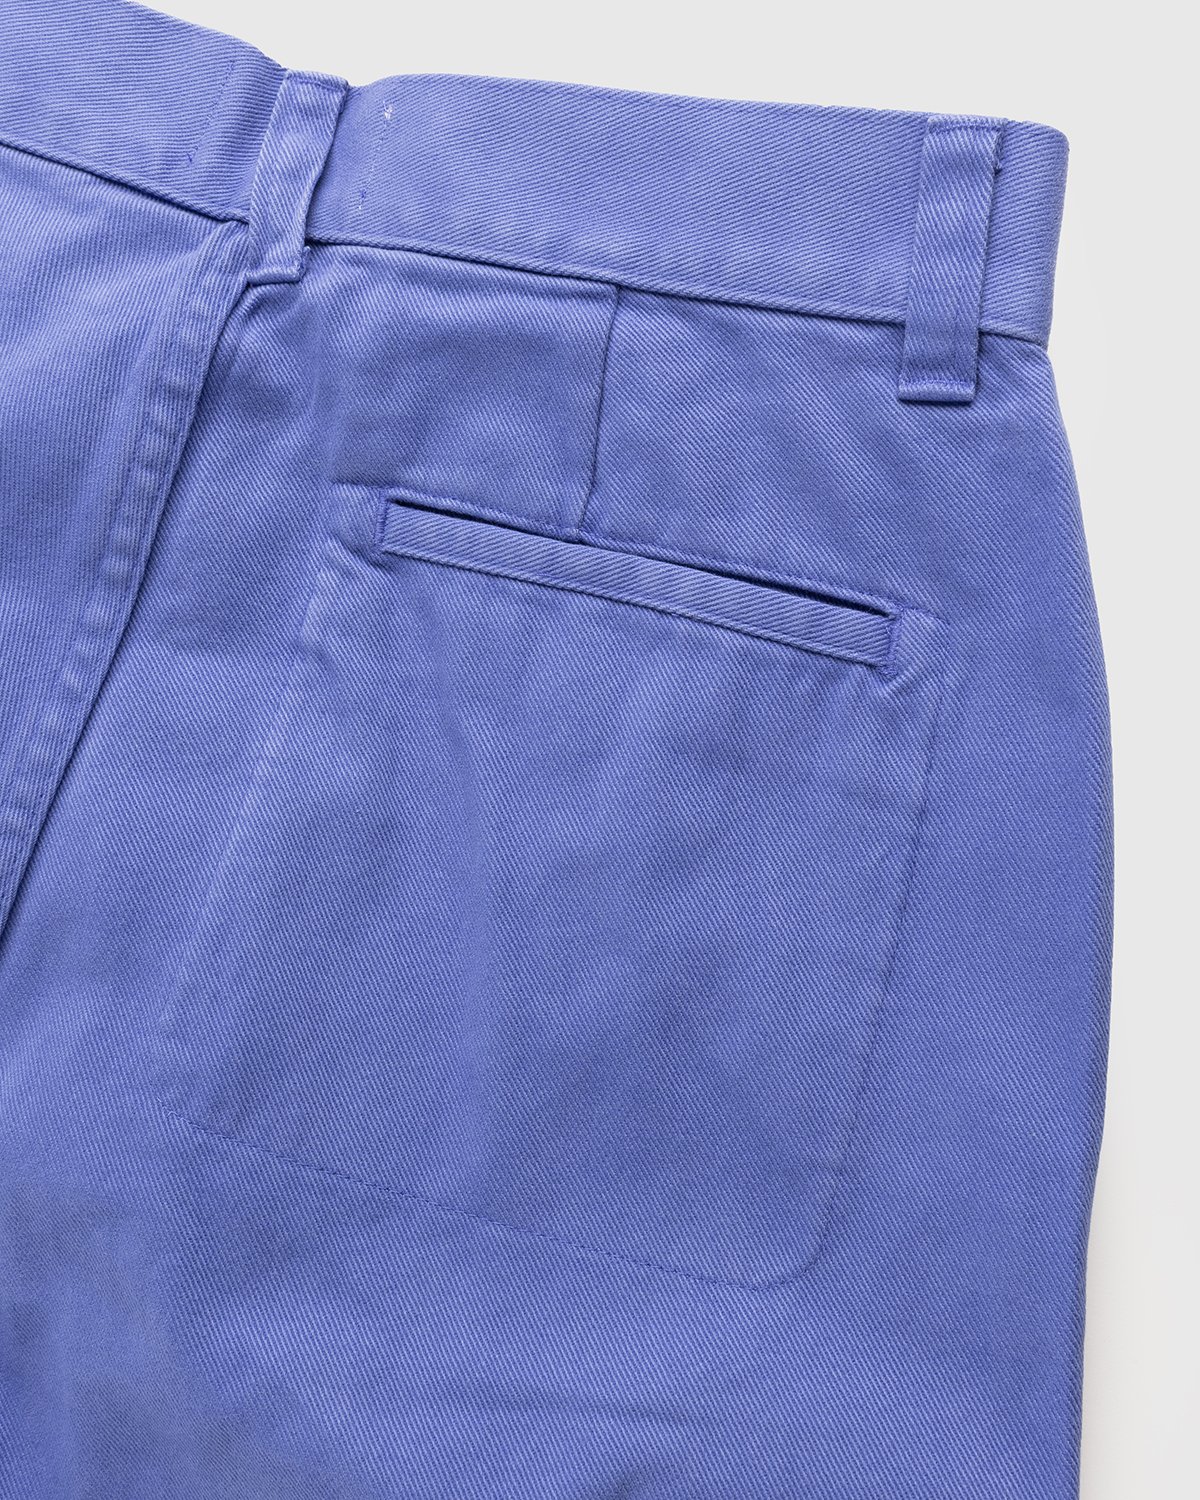 Heron Preston x Calvin Klein - Mens Straight Leg Utility Pant Amparo Blue - Clothing - Blue - Image 4